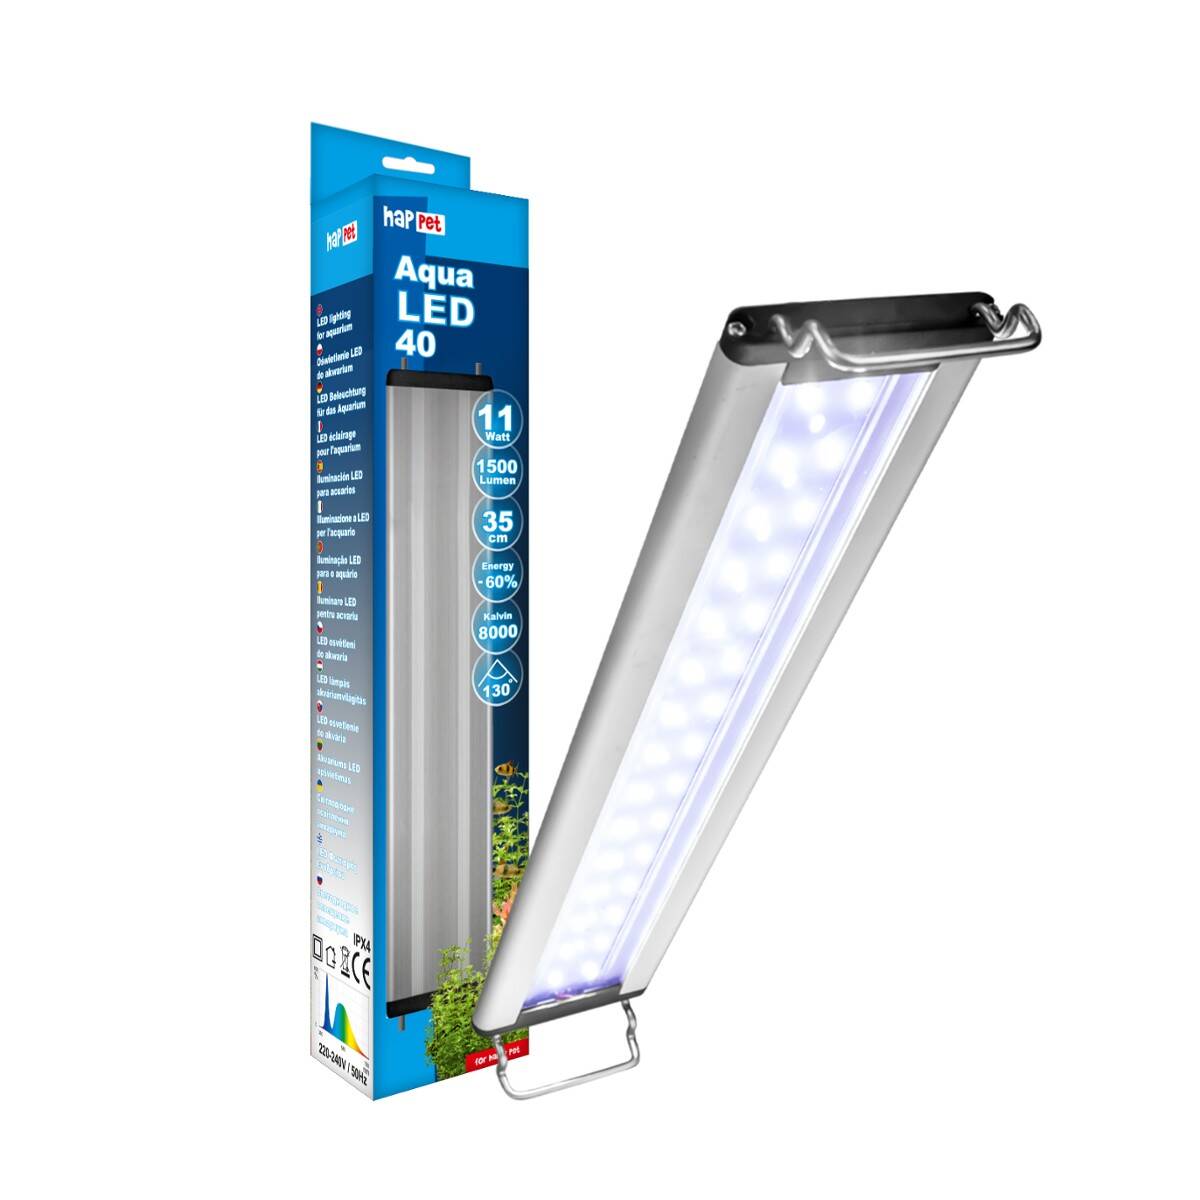 Aqua LED-Lampe 32W/112cm Happet (S-LB28JW)